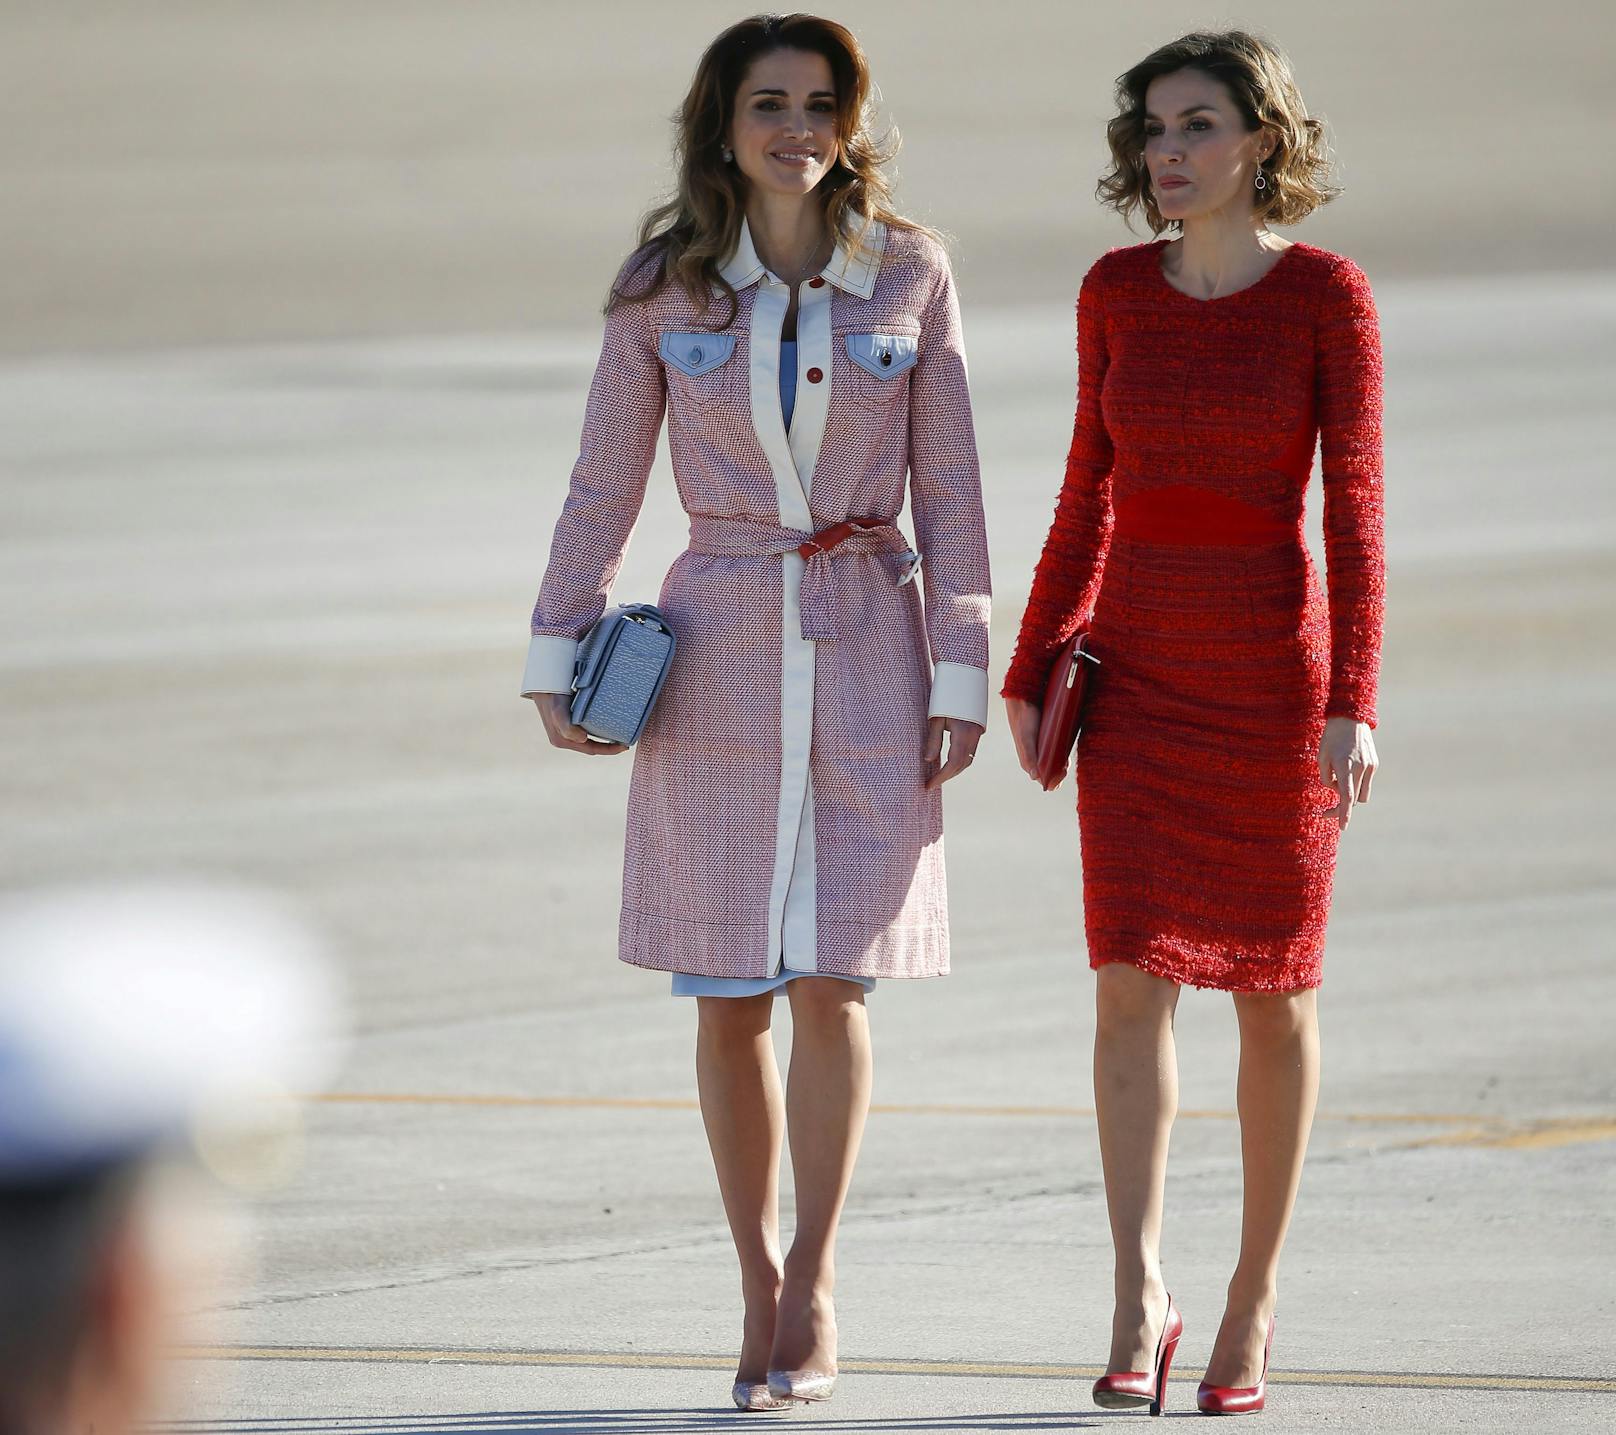 Bei der Ankunft in Madrid trug&nbsp;Jordaniens Königin einen schicken rot-weiß gewebten Wickelmantel.&nbsp;Hier mit Königin Letizia von Spanien.